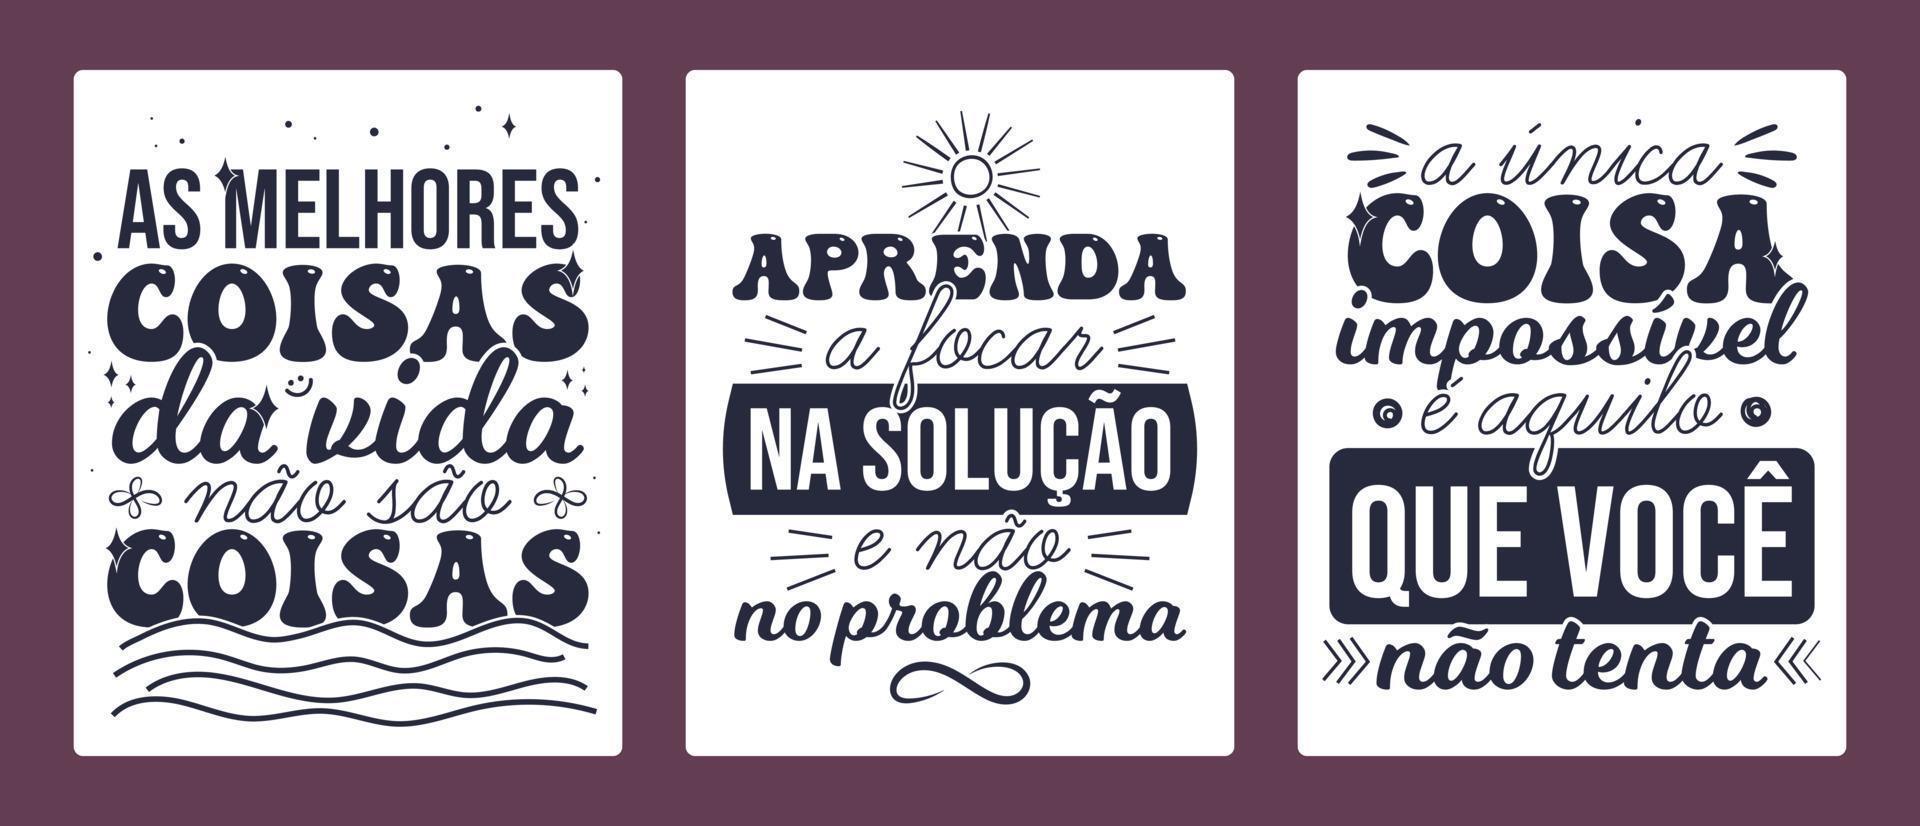 tre brasiliano portoghese manifesto. traduzione - il migliore cose nel vita siamo non le cose. - imparare per messa a fuoco su il soluzione, non il problema. - il solo cosa impossibile è che cosa voi fare non Tentativo. vettore